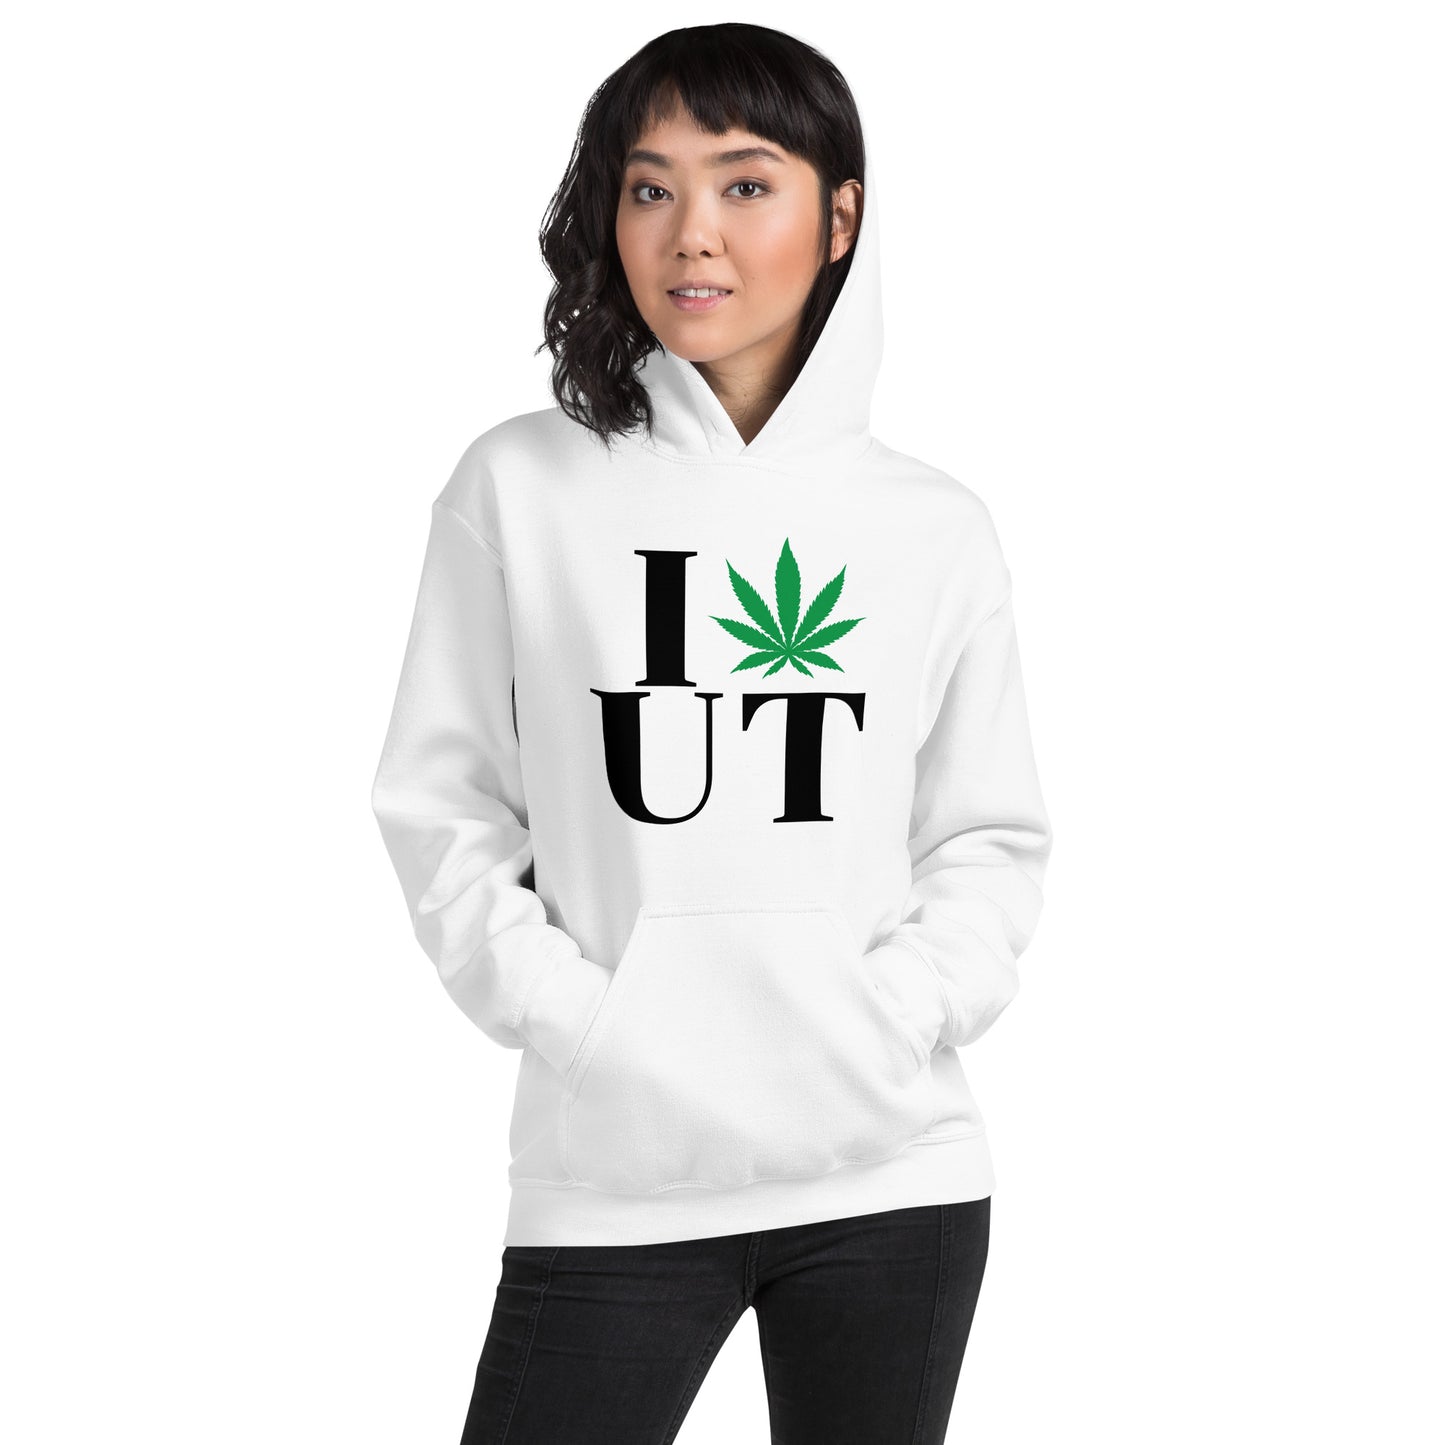 Utah I Leaf UT Unisex Hoodie USA Cannabis Marijuana Pot Weed Advocacy